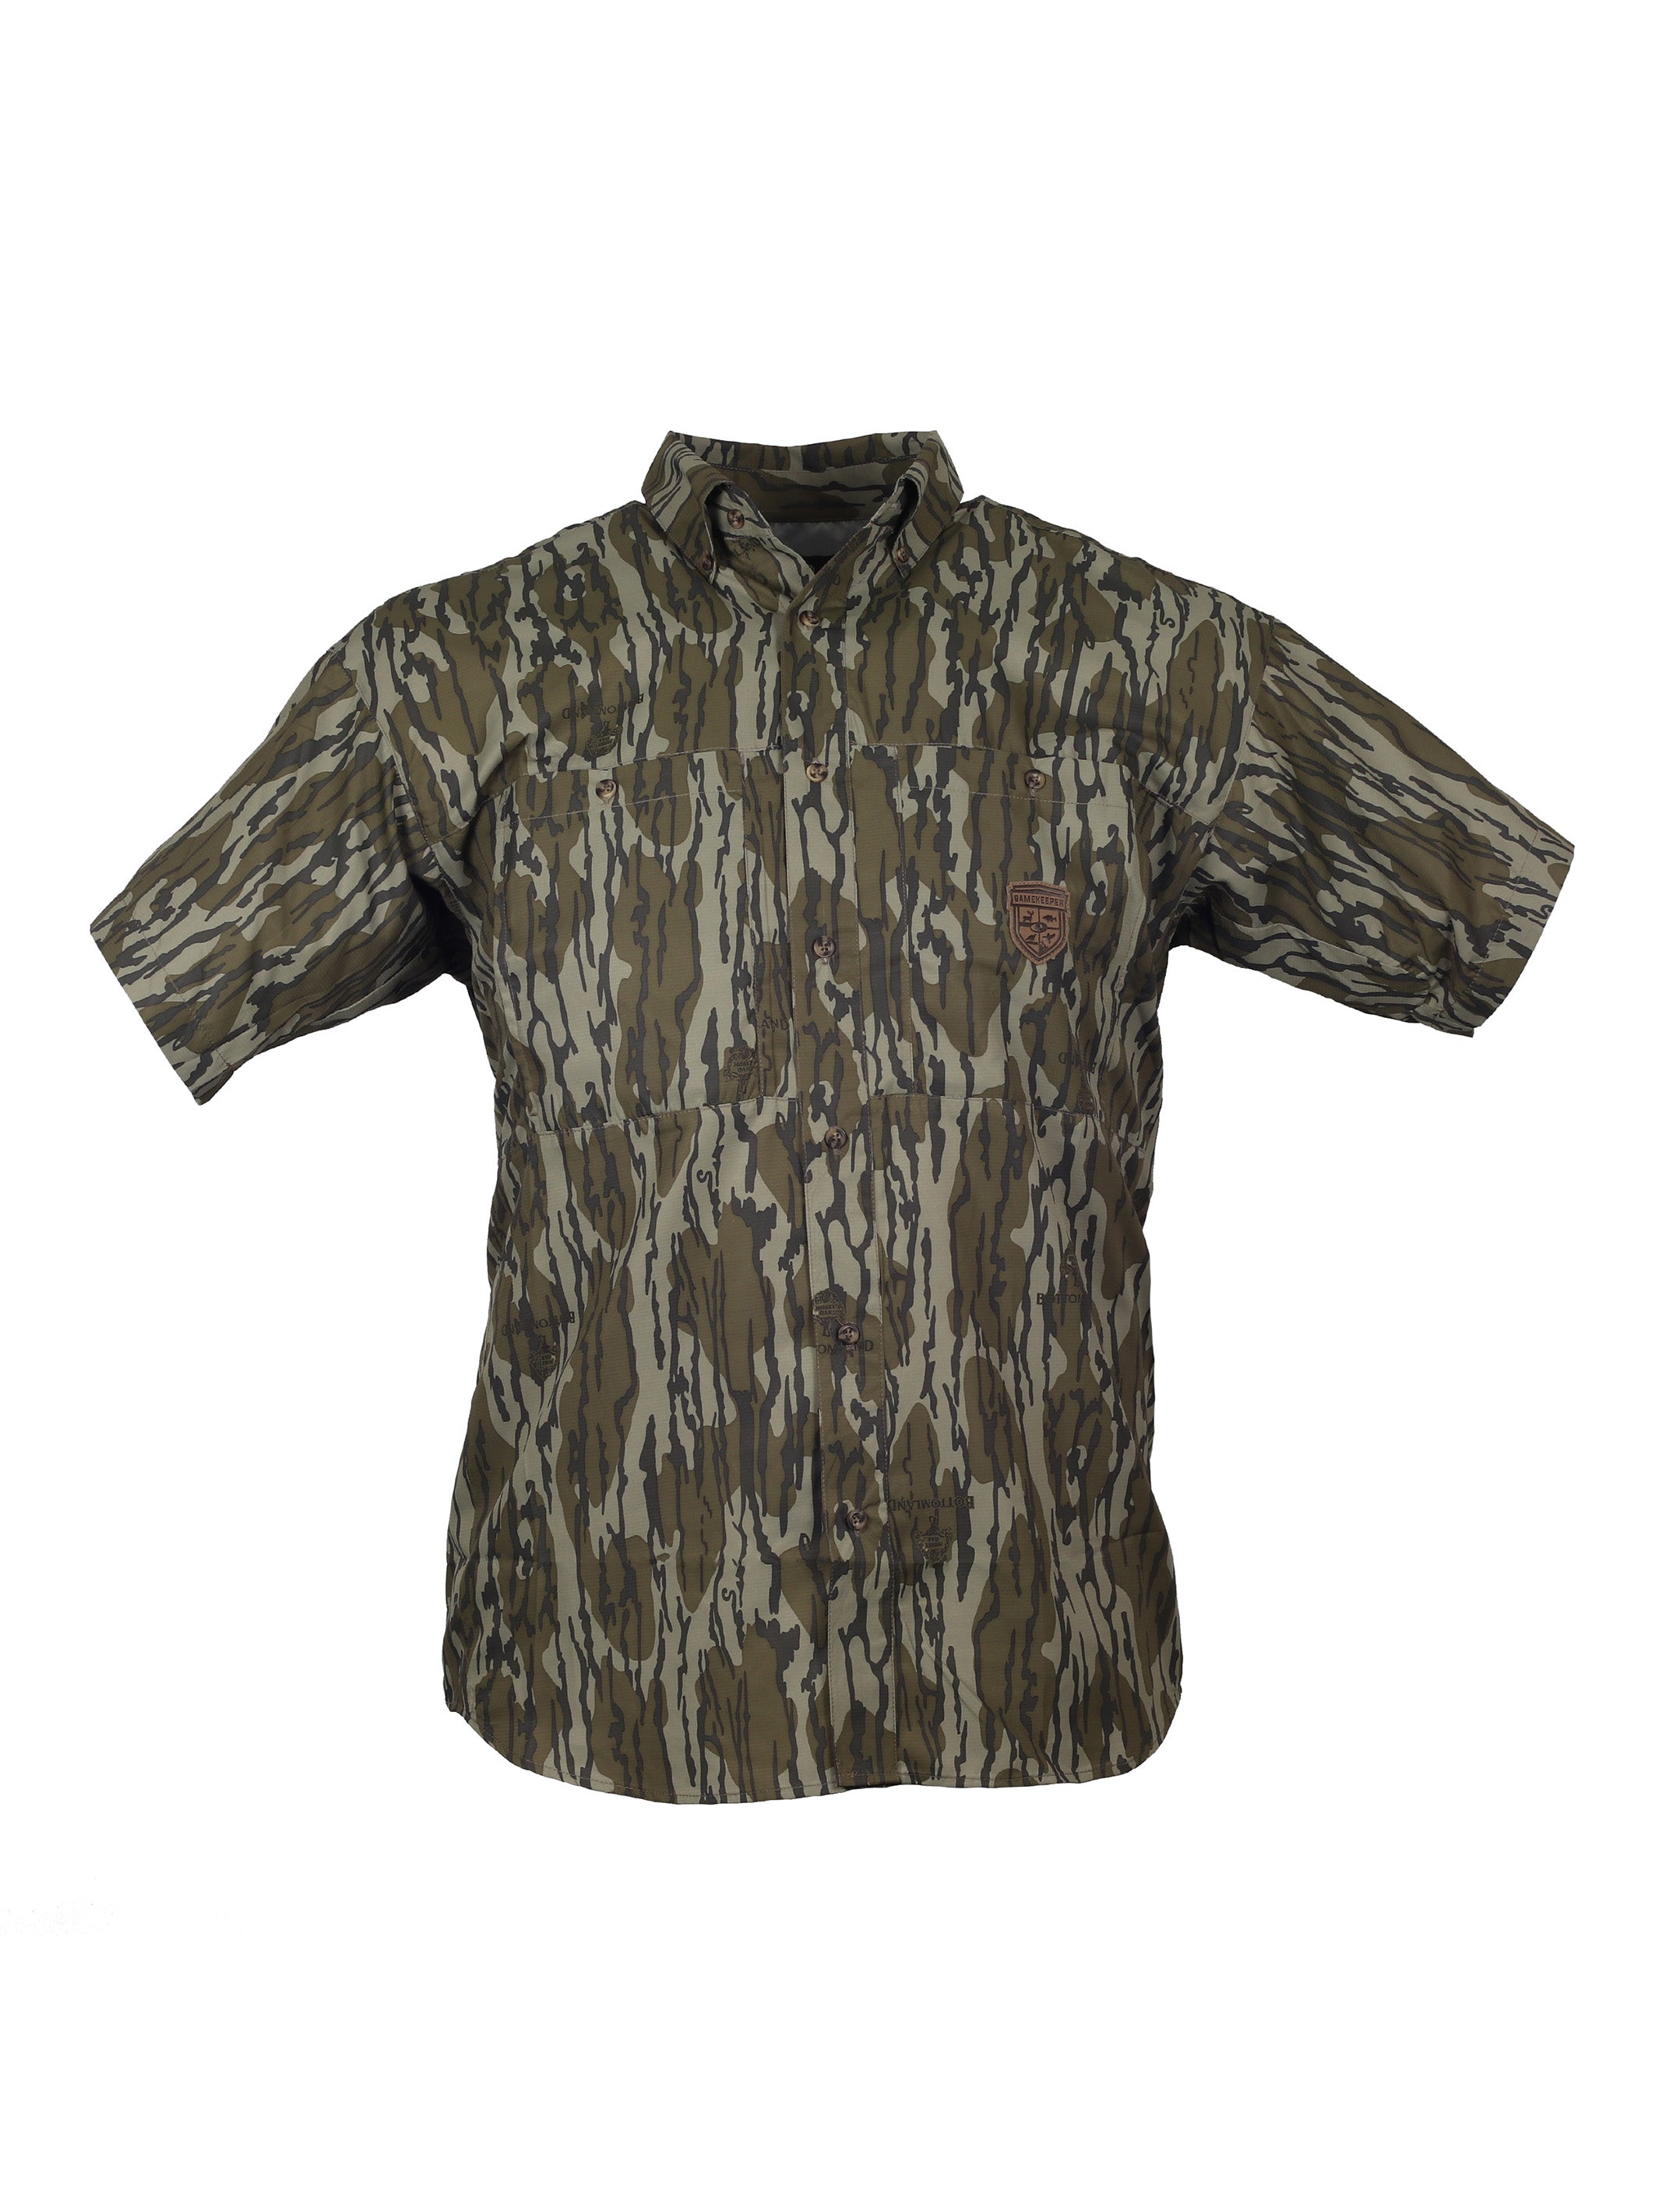 NTN Short Sleeve Button Down Shirt - 113721BTD - Mossy Oak Original Bottomland Camo